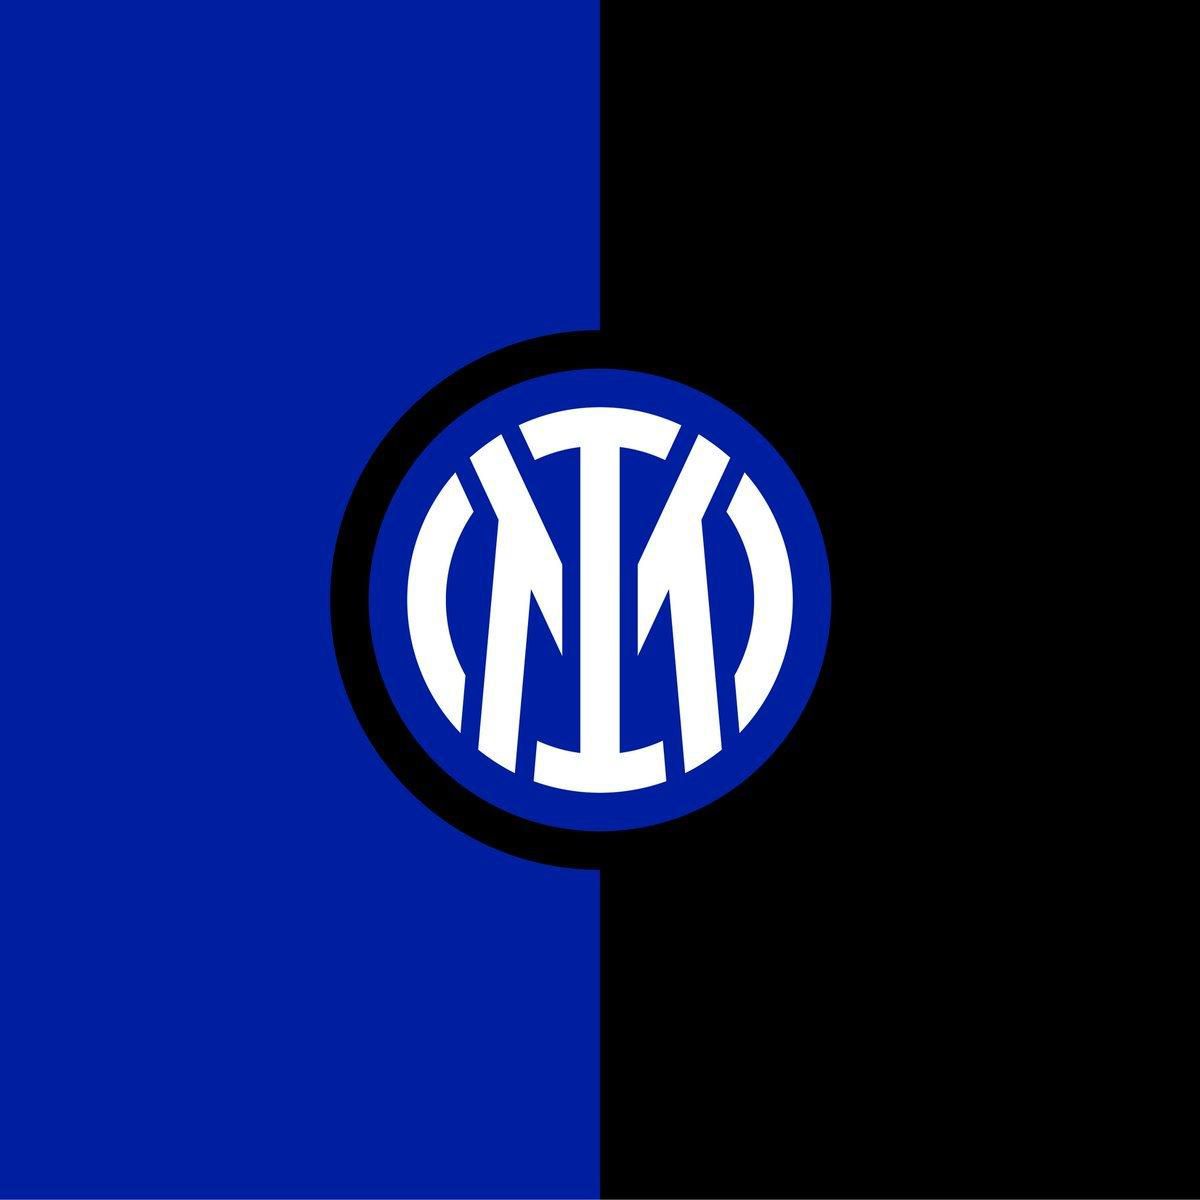 Nové logo Interu Miláno